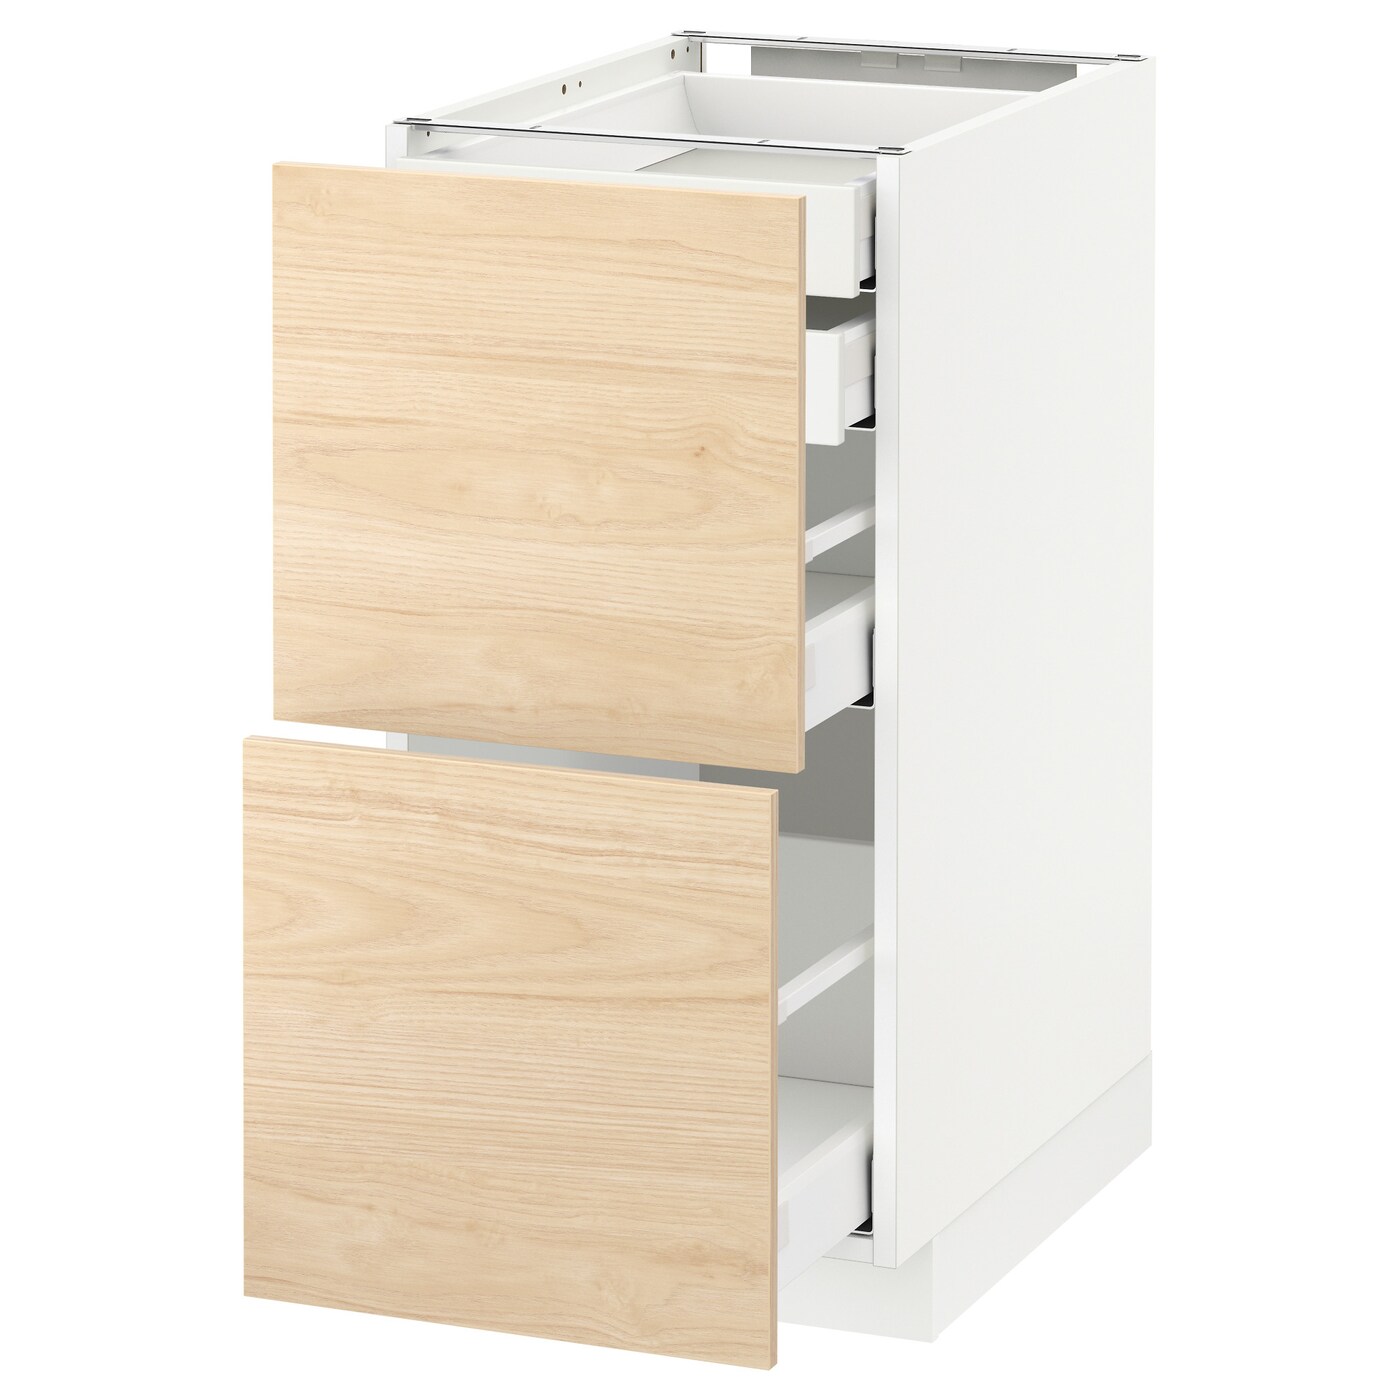 Напольный кухонный шкаф  - IKEA METOD MAXIMERA, 88x61,6x40см, белый/светло-коричневый, МЕТОД МАКСИМЕРА ИКЕА